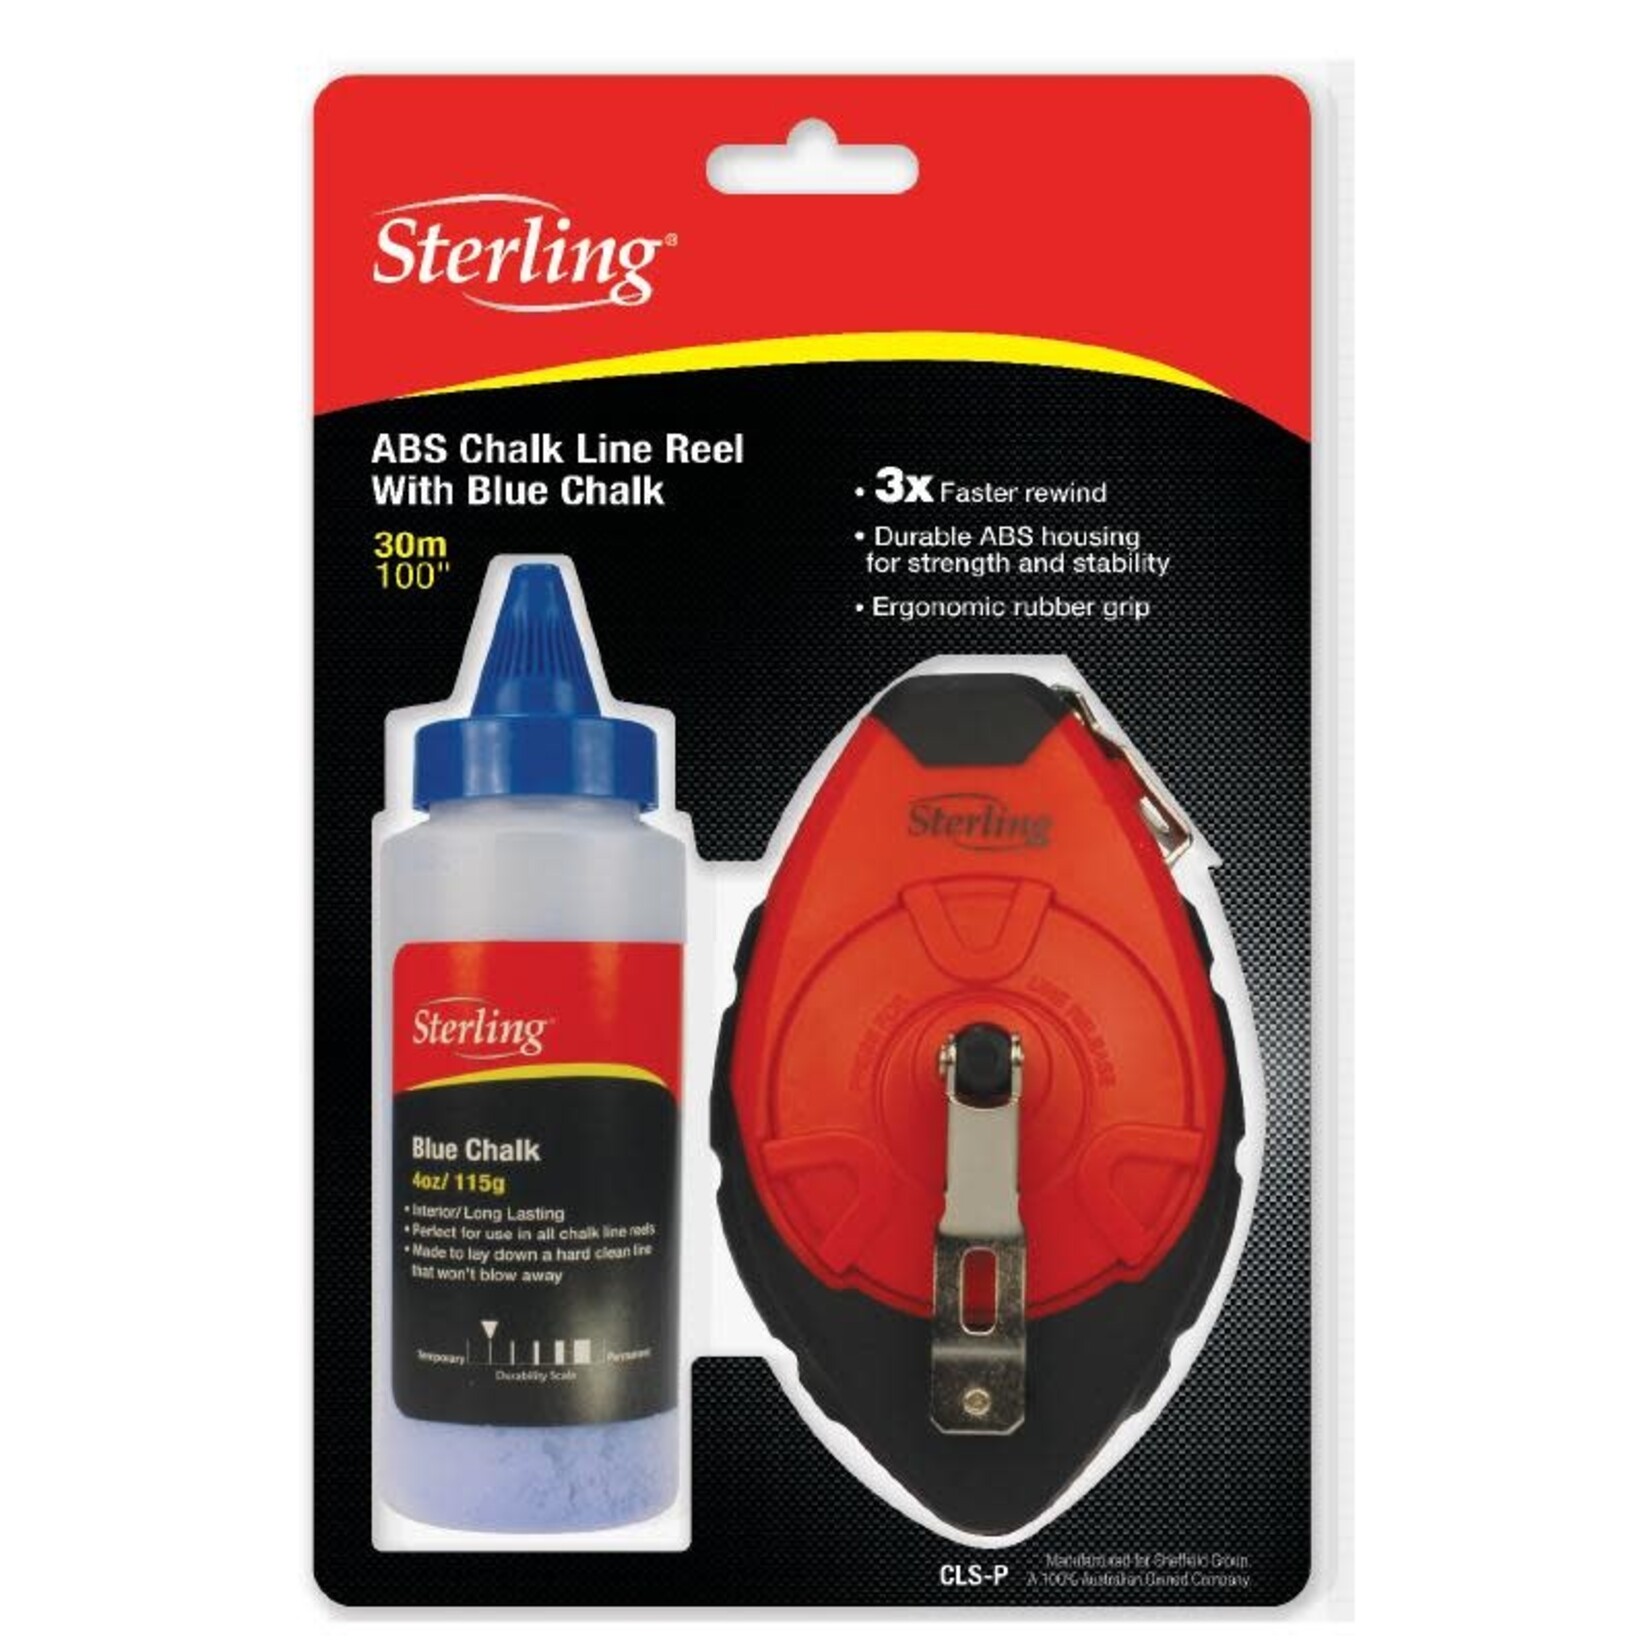 Sterling Sterling Chalk Line Set: ABS Case